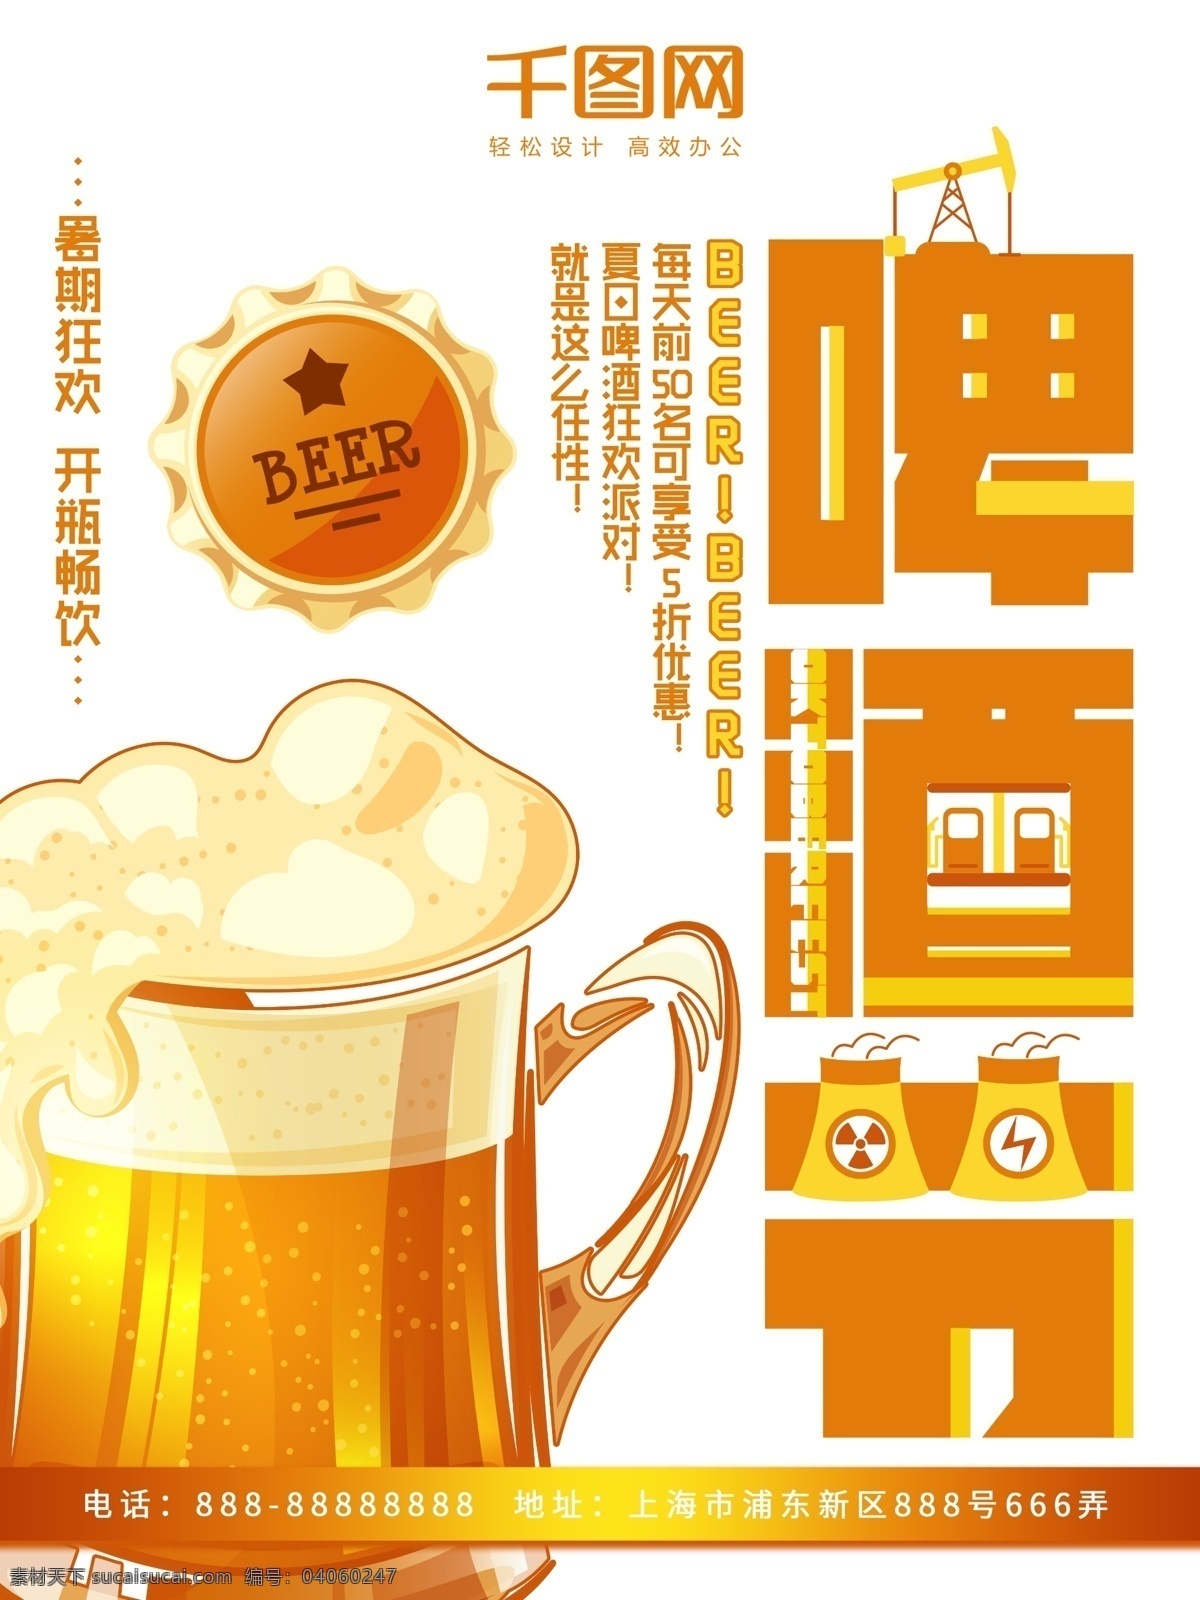 啤酒节 橙色 扁平化 暑期 狂欢 商业 商业海报 暑期狂欢 激情一夏 开瓶畅饮 啤酒节海报 啤酒节派对 夏日啤酒节